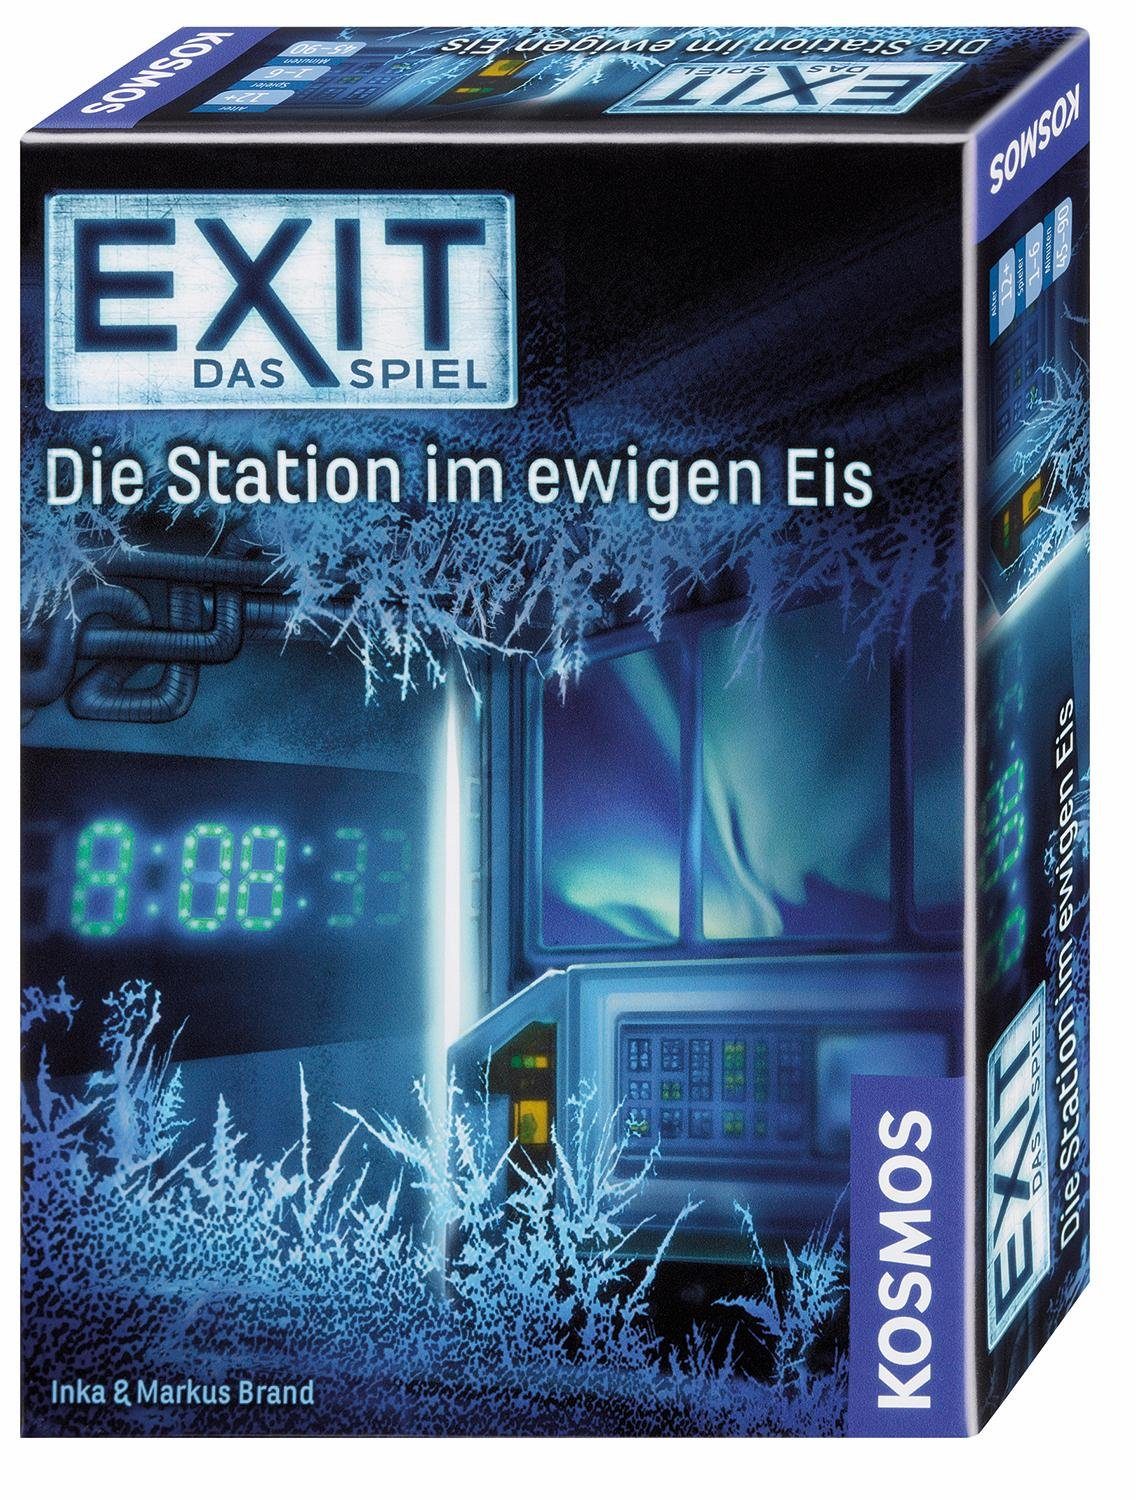 Eis, Made Das Spiel, ewigen im Kosmos Spiel, Station Exit Germany Die in